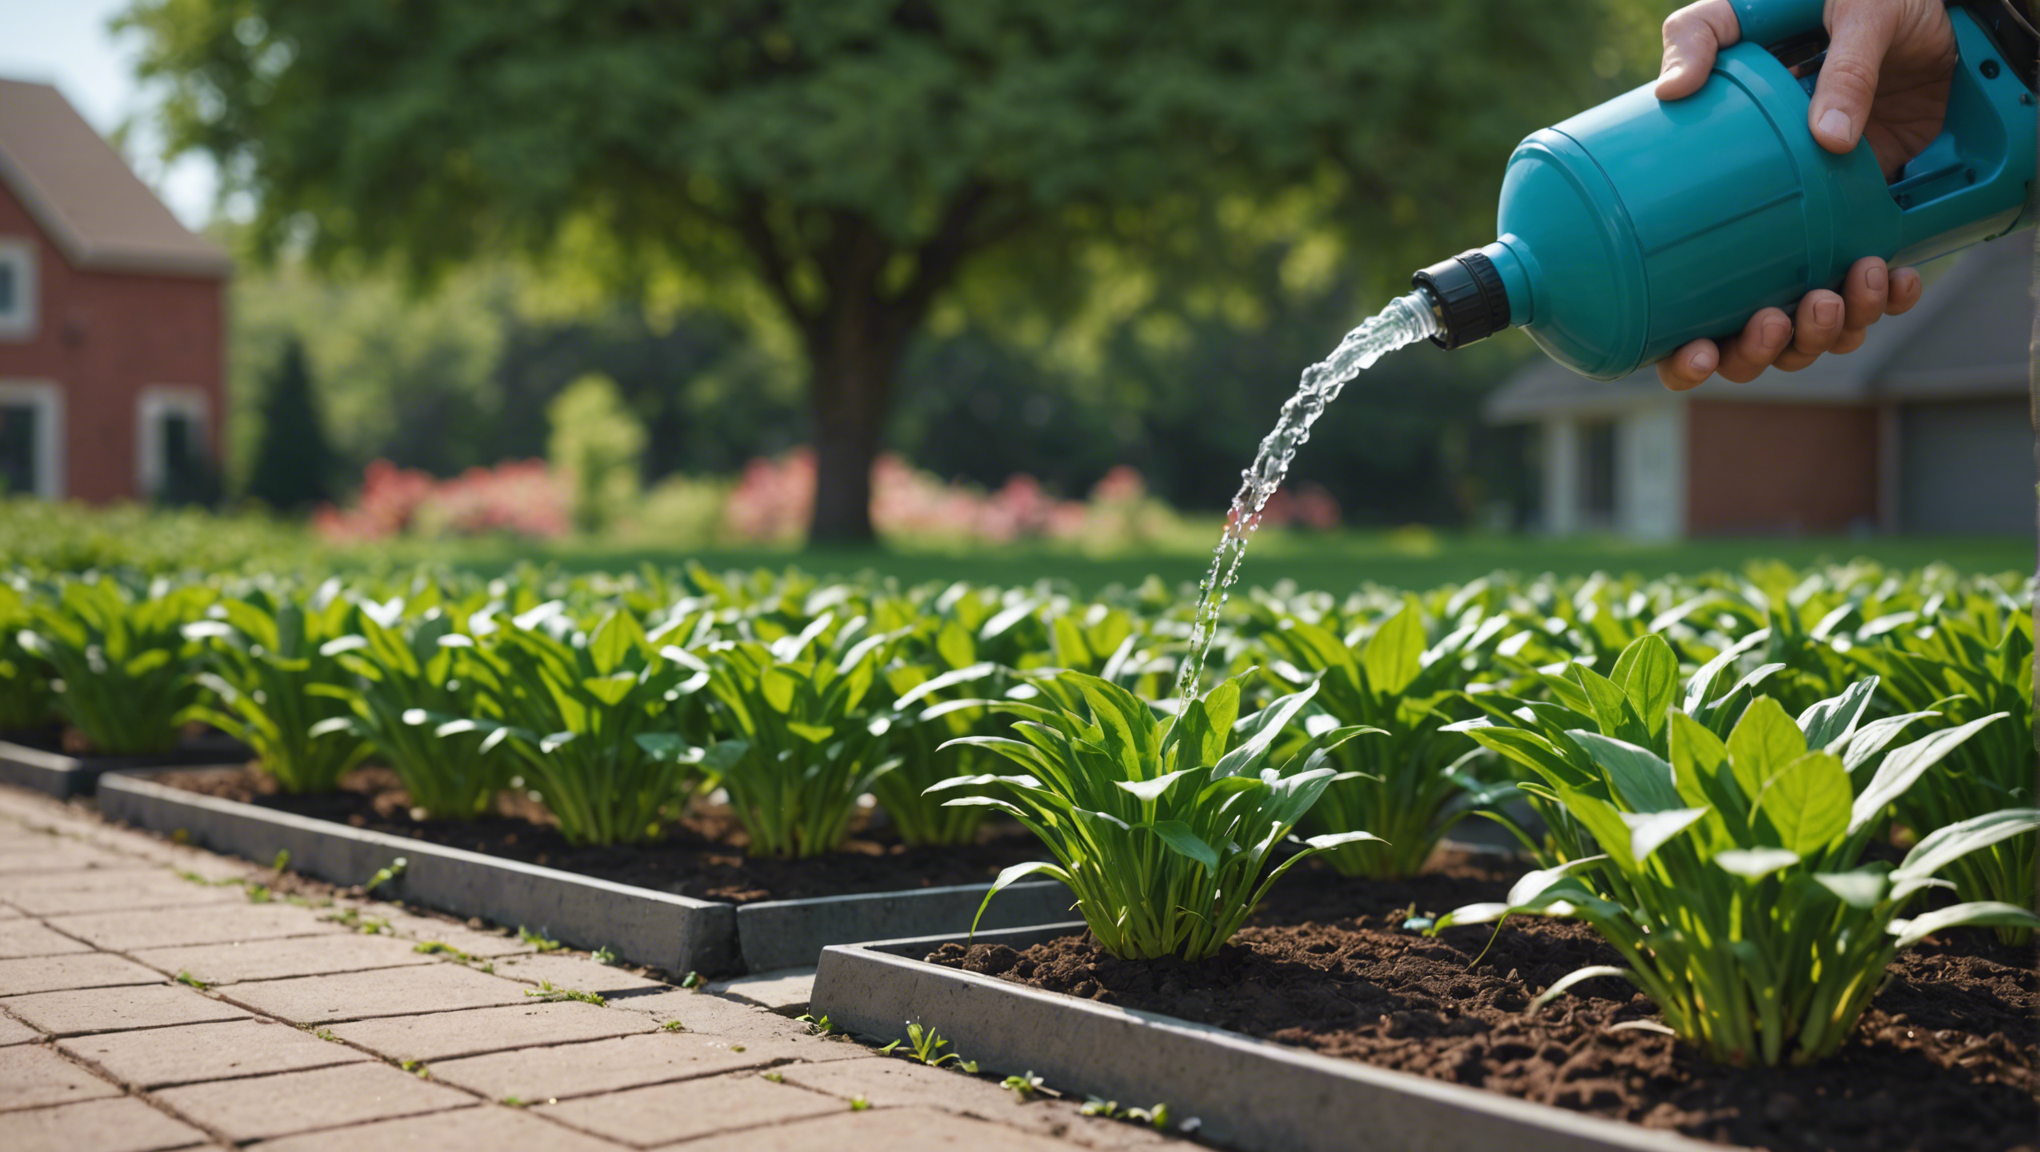 découvrez dans cet article comment mettre en place un système d'arrosage automatique pour votre jardin, avec des conseils pratiques et des étapes détaillées.